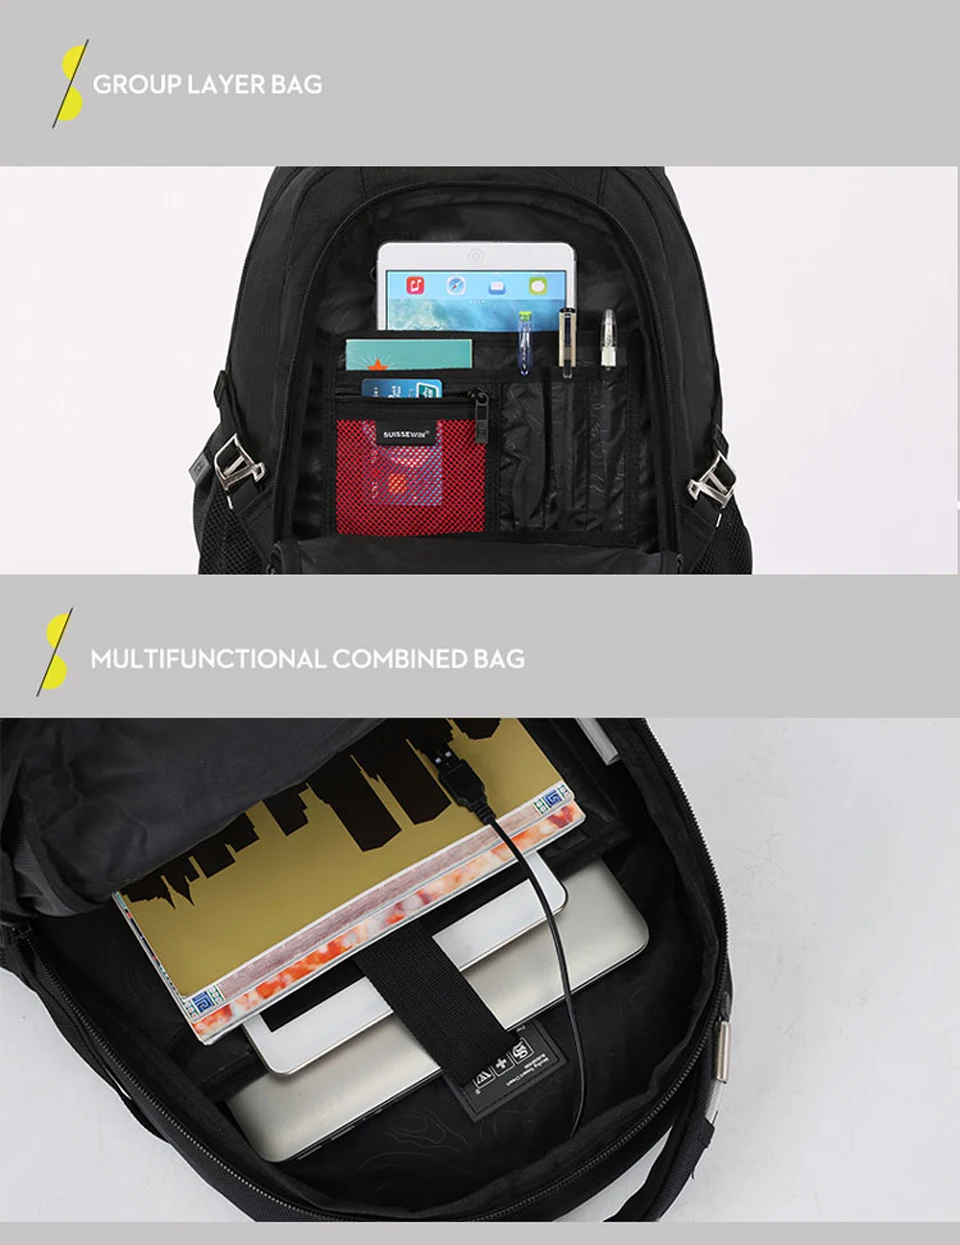 2019 новый швейцарский бренд suissewin черный 1680D нейлон USB зарядки бизнес рюкзак водонепроницаемая сумка для ноутбука для мужчин и женщин